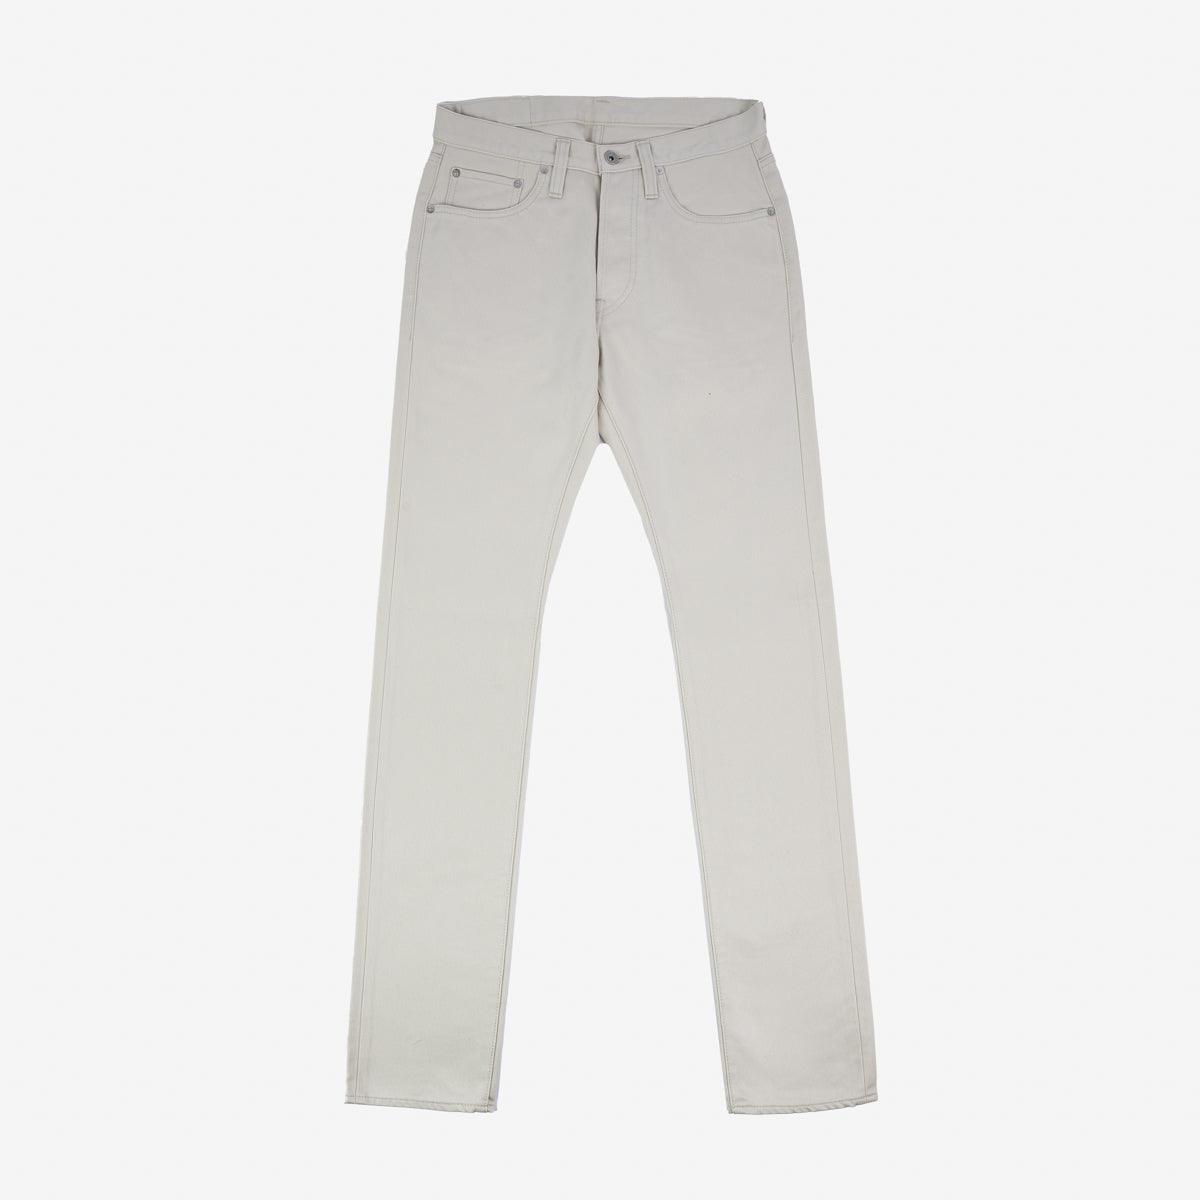 IH-555-PIQ - 14oz Cotton Piqué Super Slim Cut Jeans - Ecru